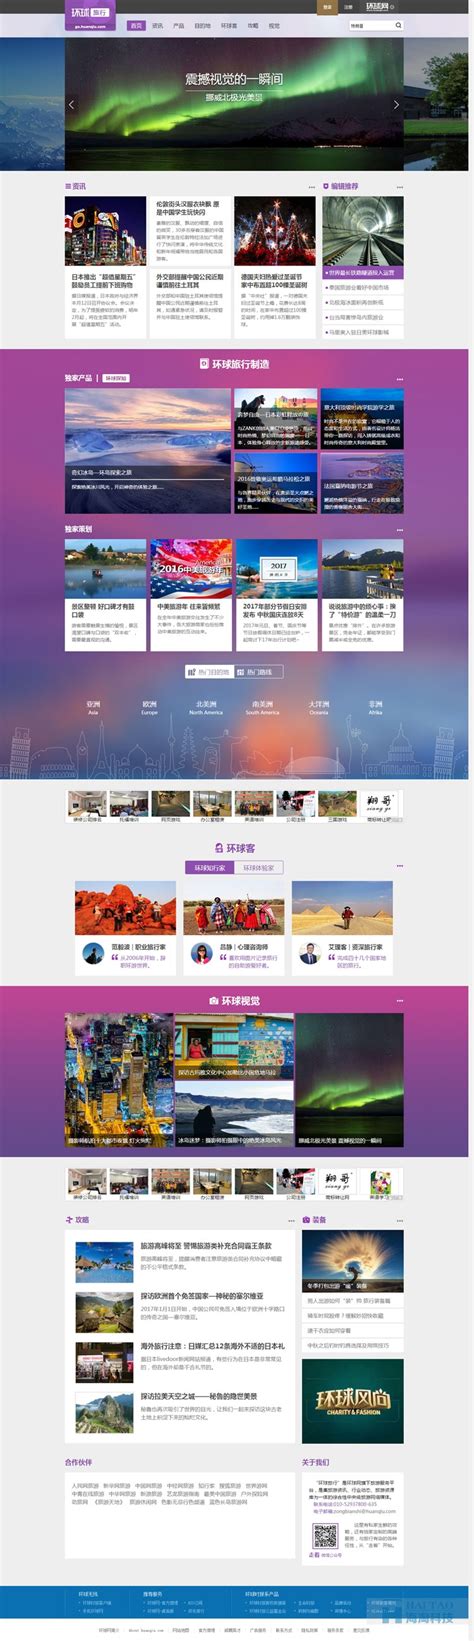 环球摄影网站建设,上海旅游网站的建设,旅游公司网站建设-海淘科技